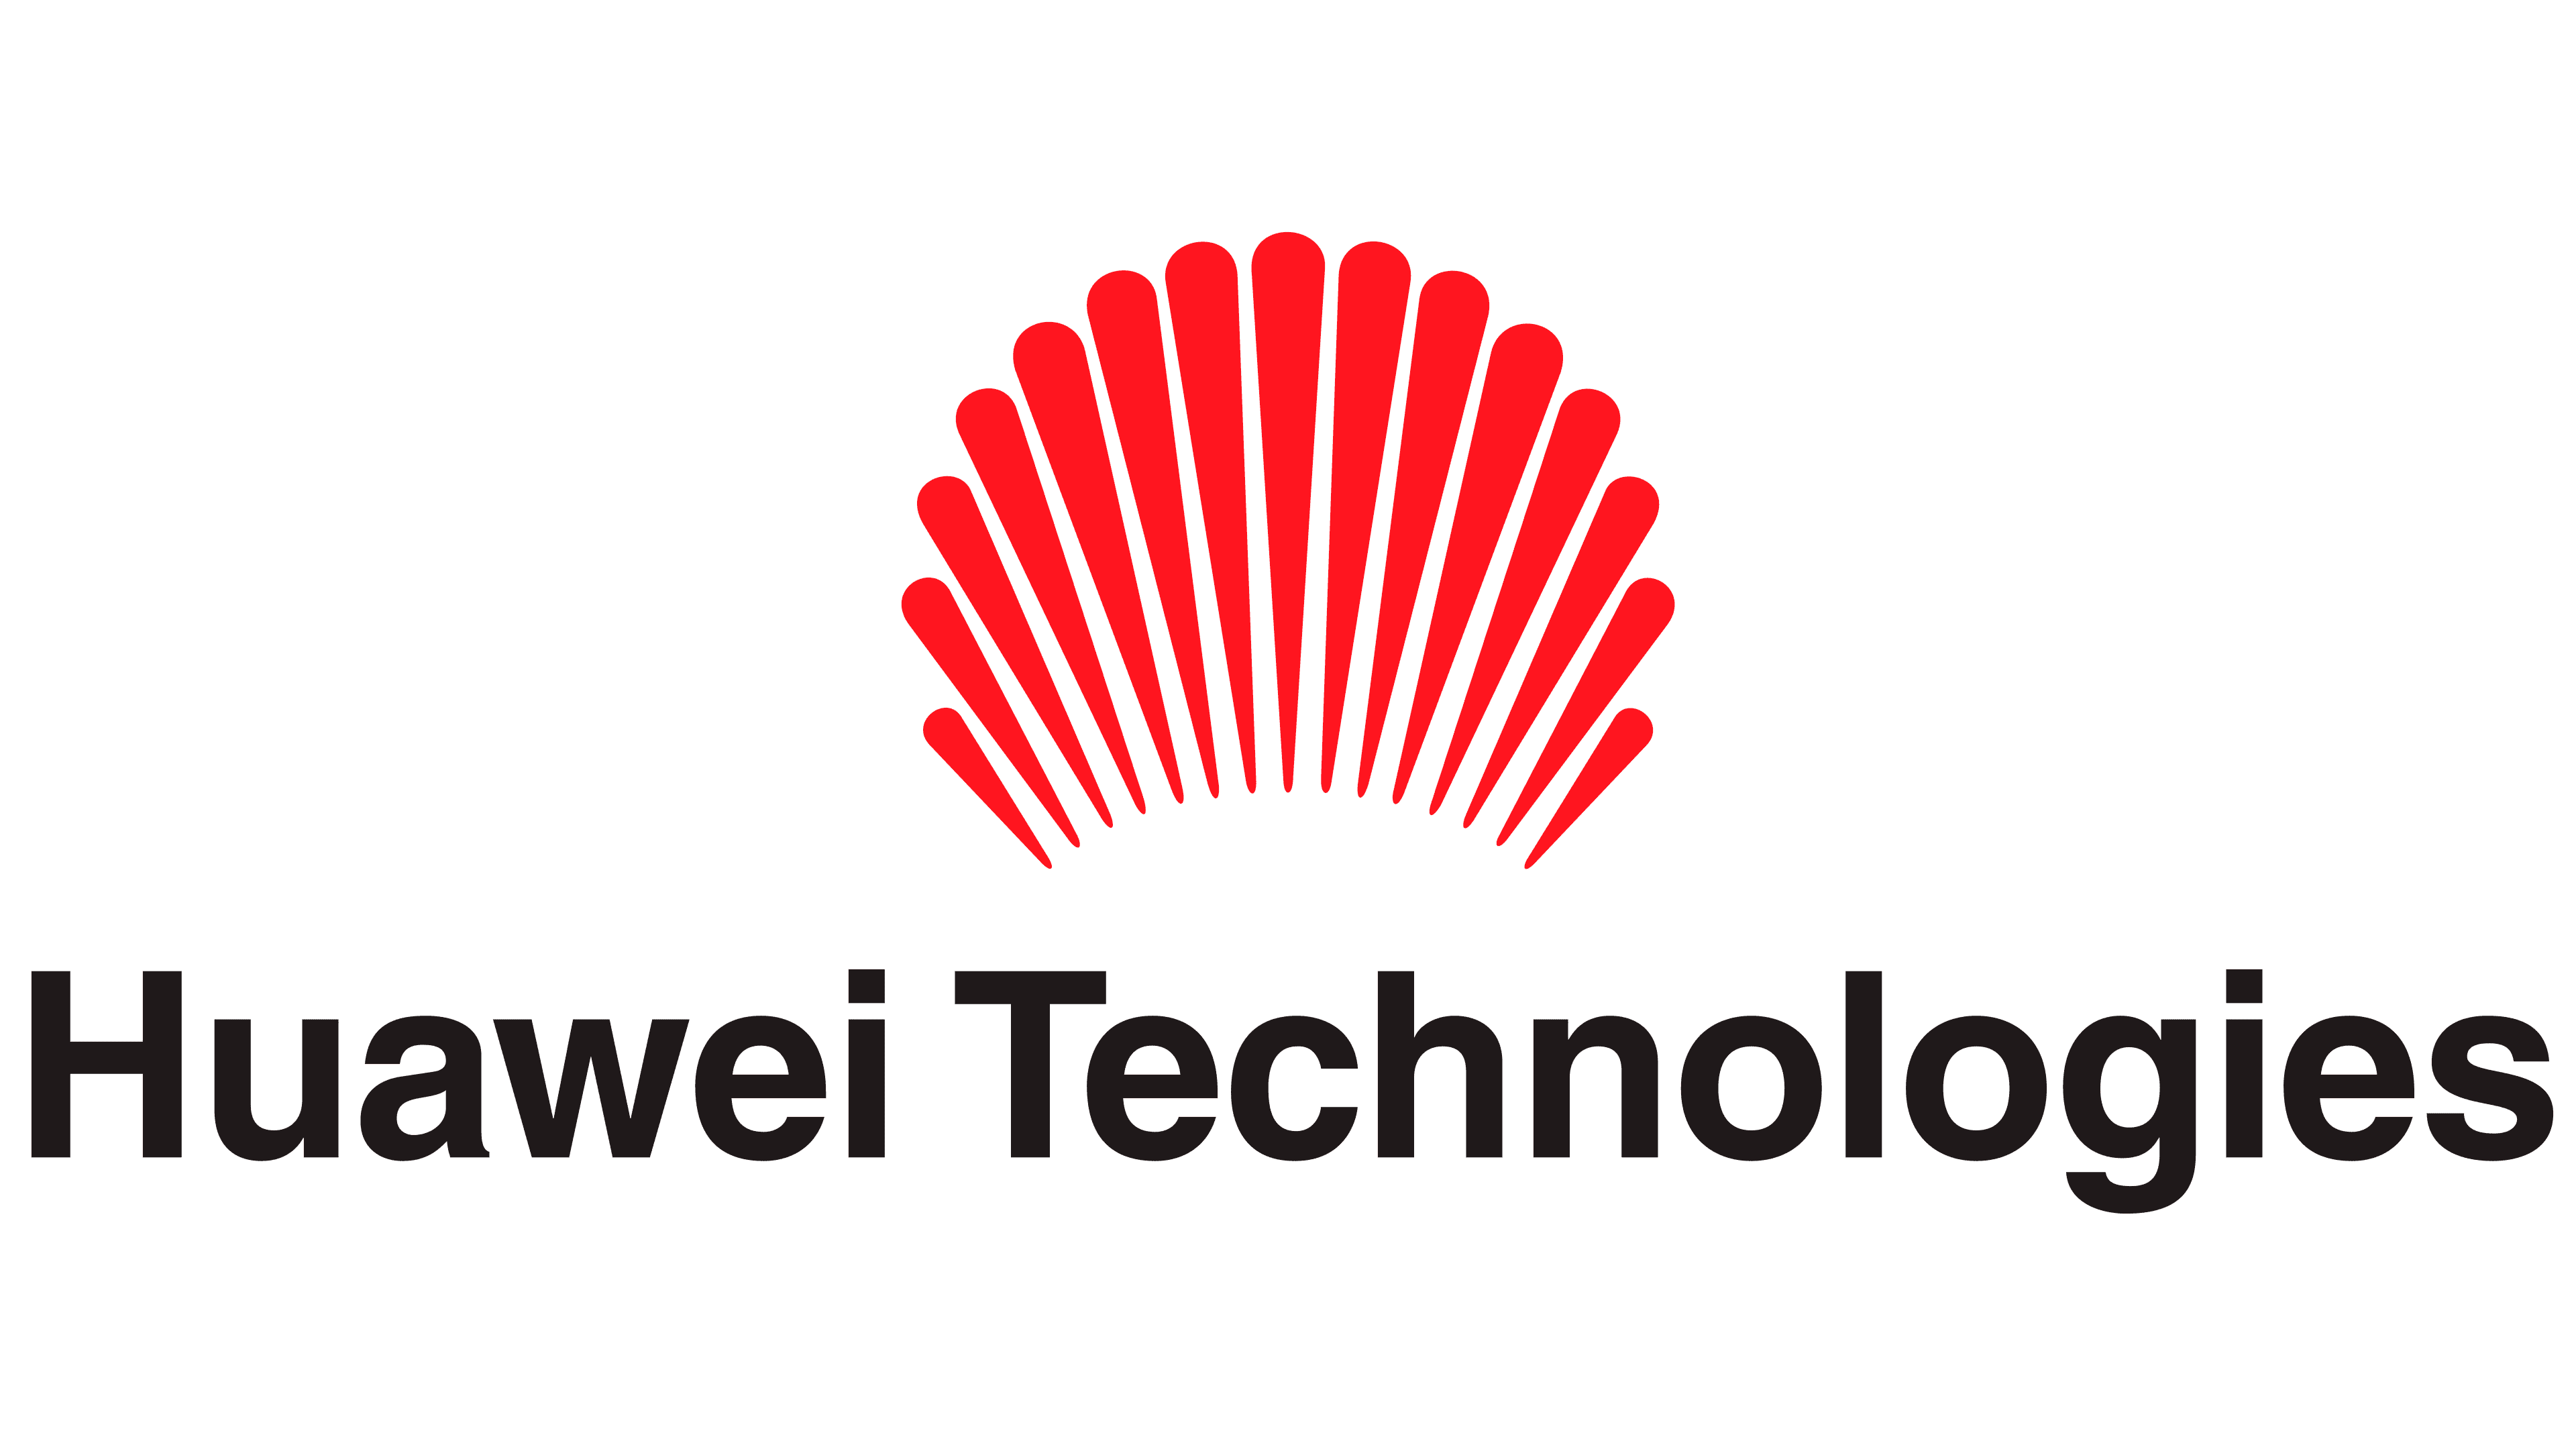 Huawei Logo History